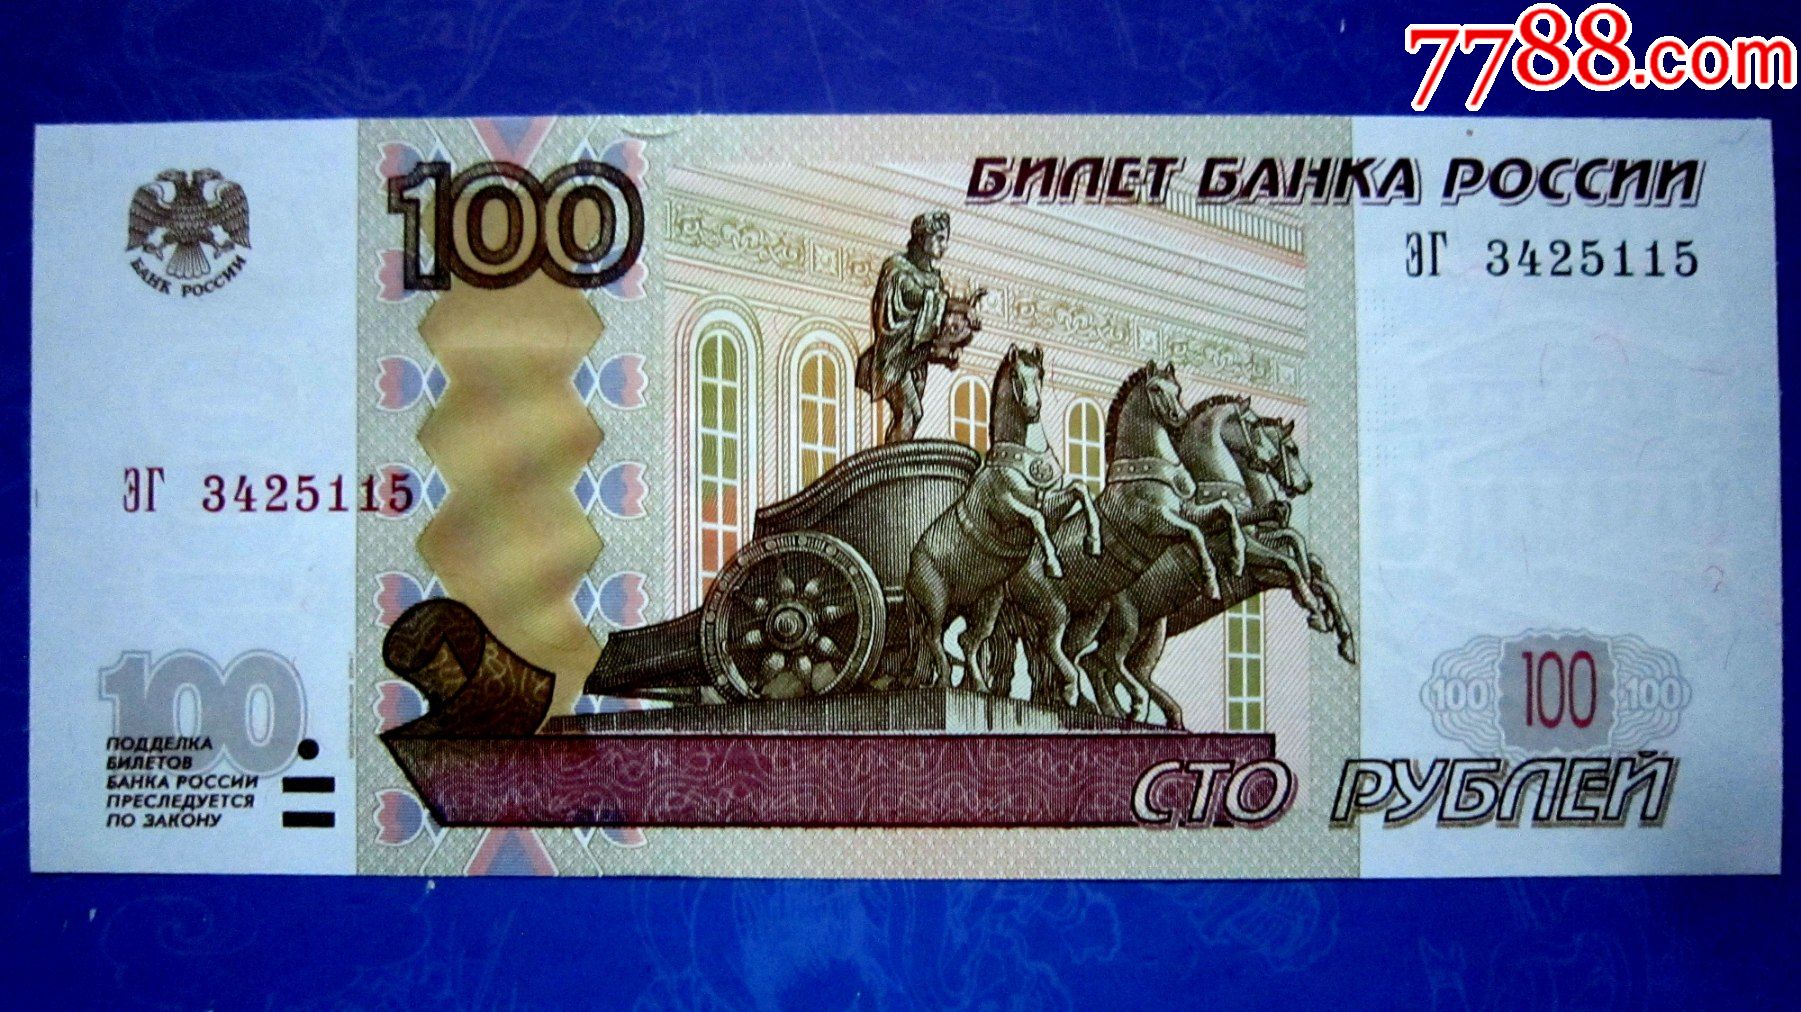 保真精美外钞俄罗斯1997年100卢布荧光水印金属线防伪